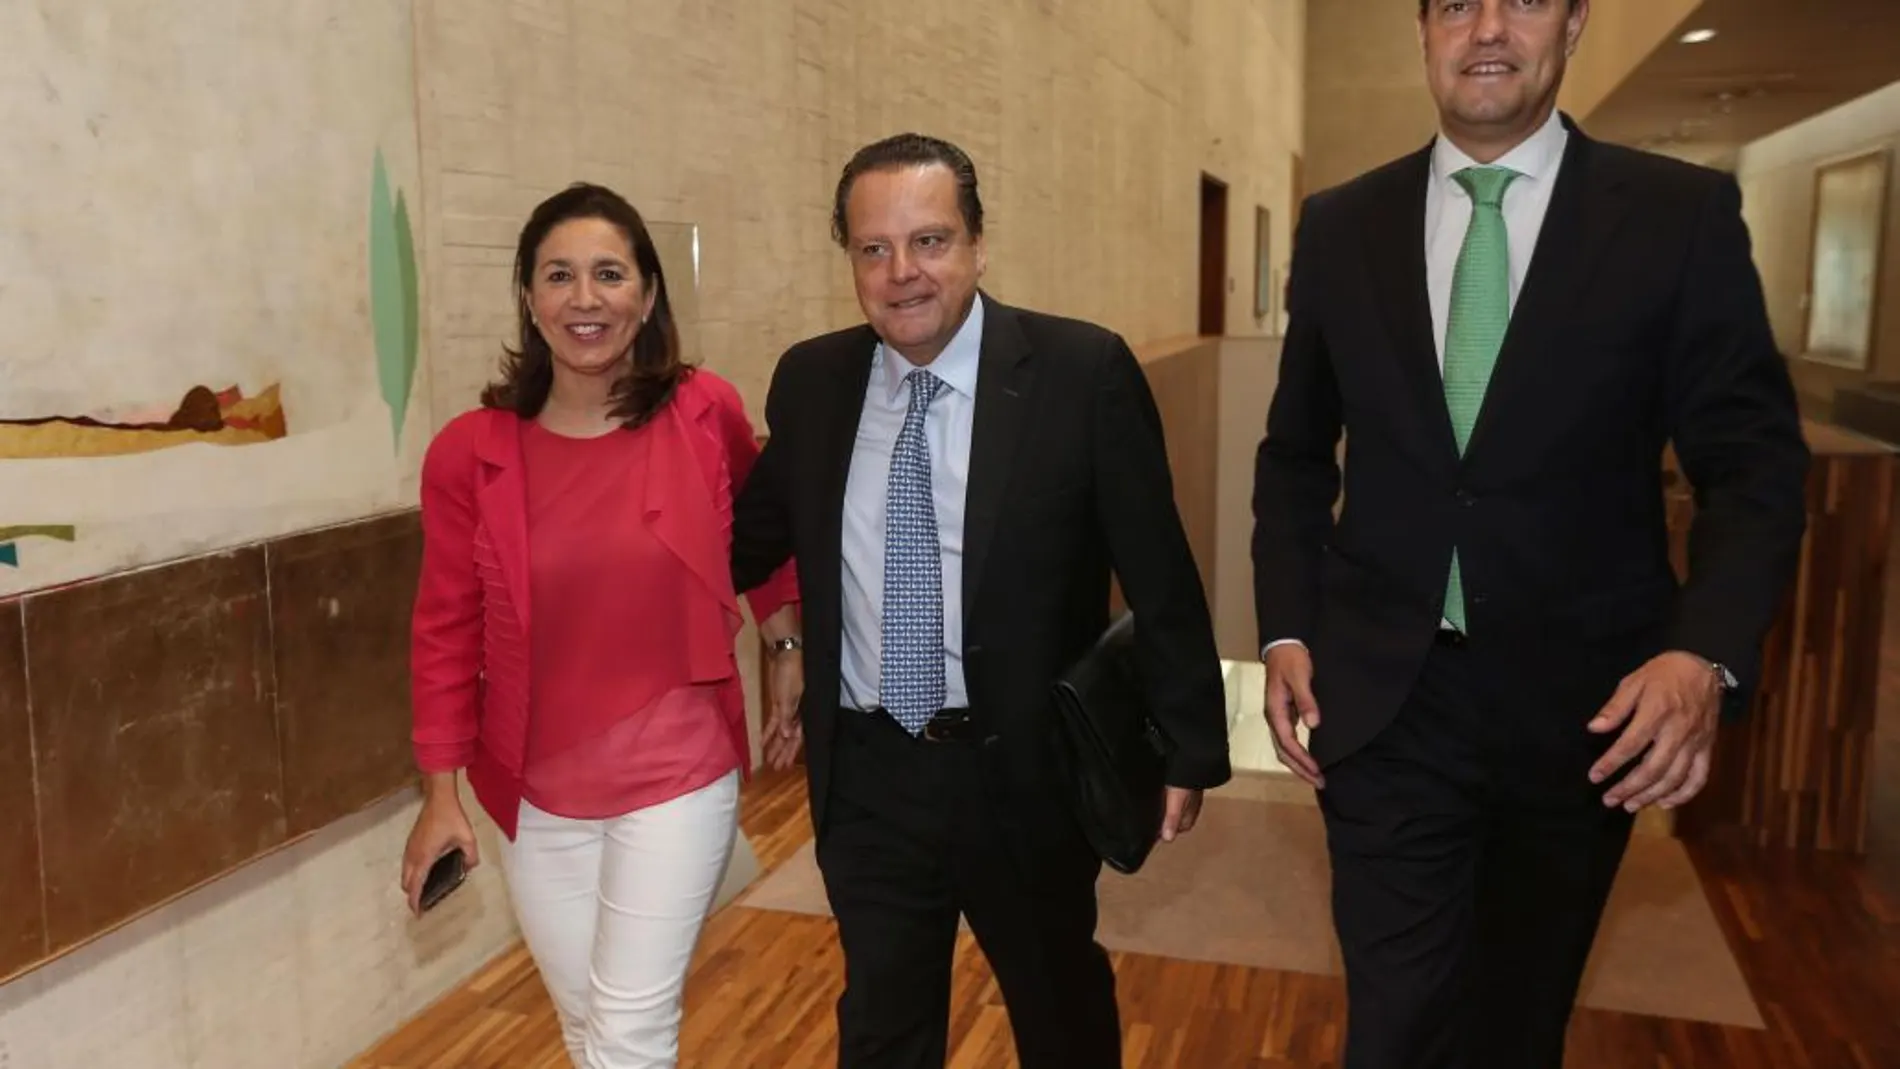 El presidente del Consejo Consultivo, Mario Amilivia llega a la comisión en compañía de los procuradores populares Ángel Ibáñez y Ana Rosa Sopeña